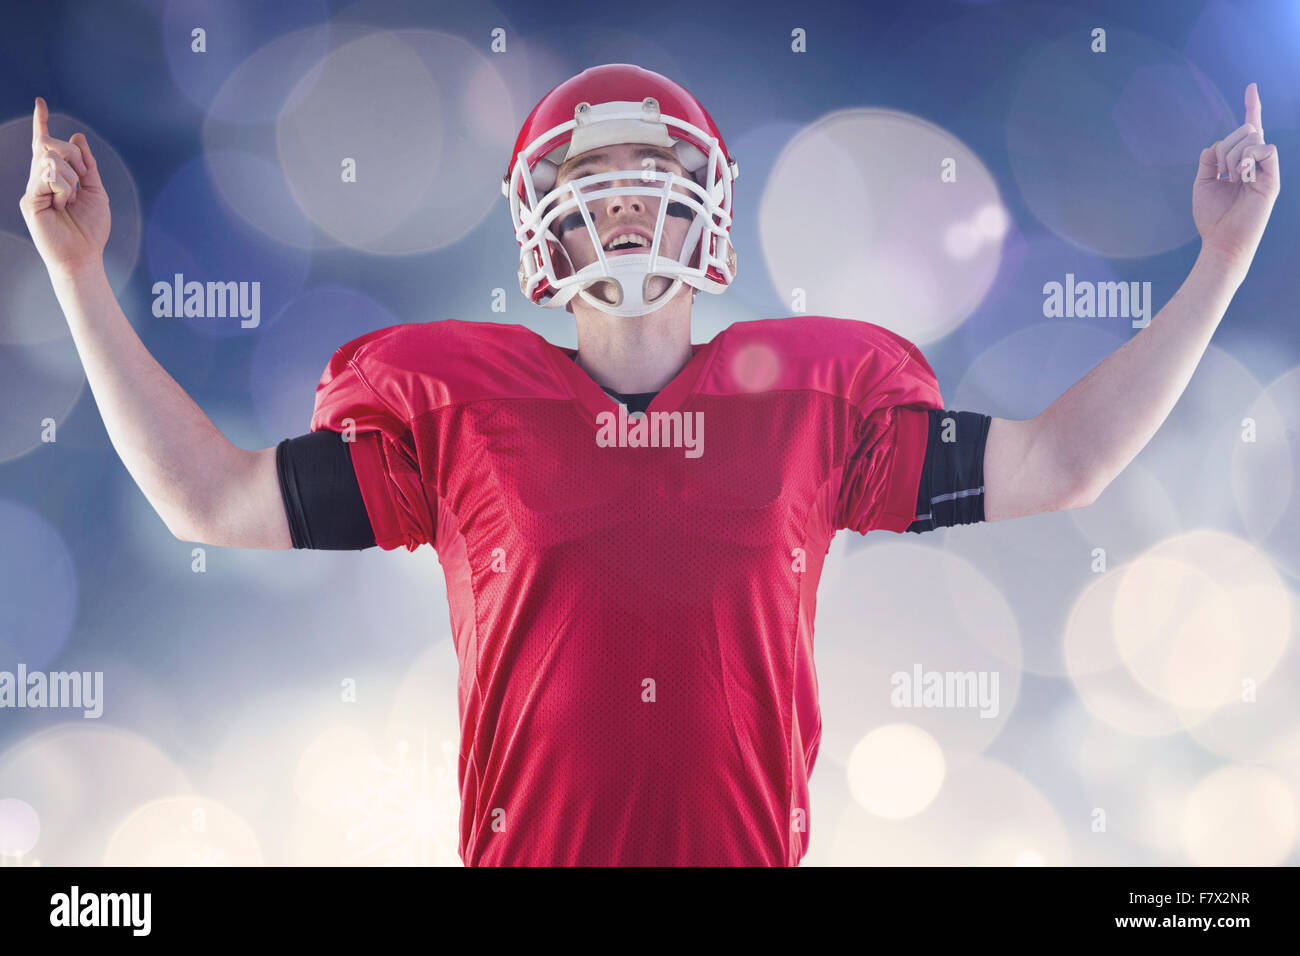 Immagine composita del giocatore di football americano in trionfo Foto Stock